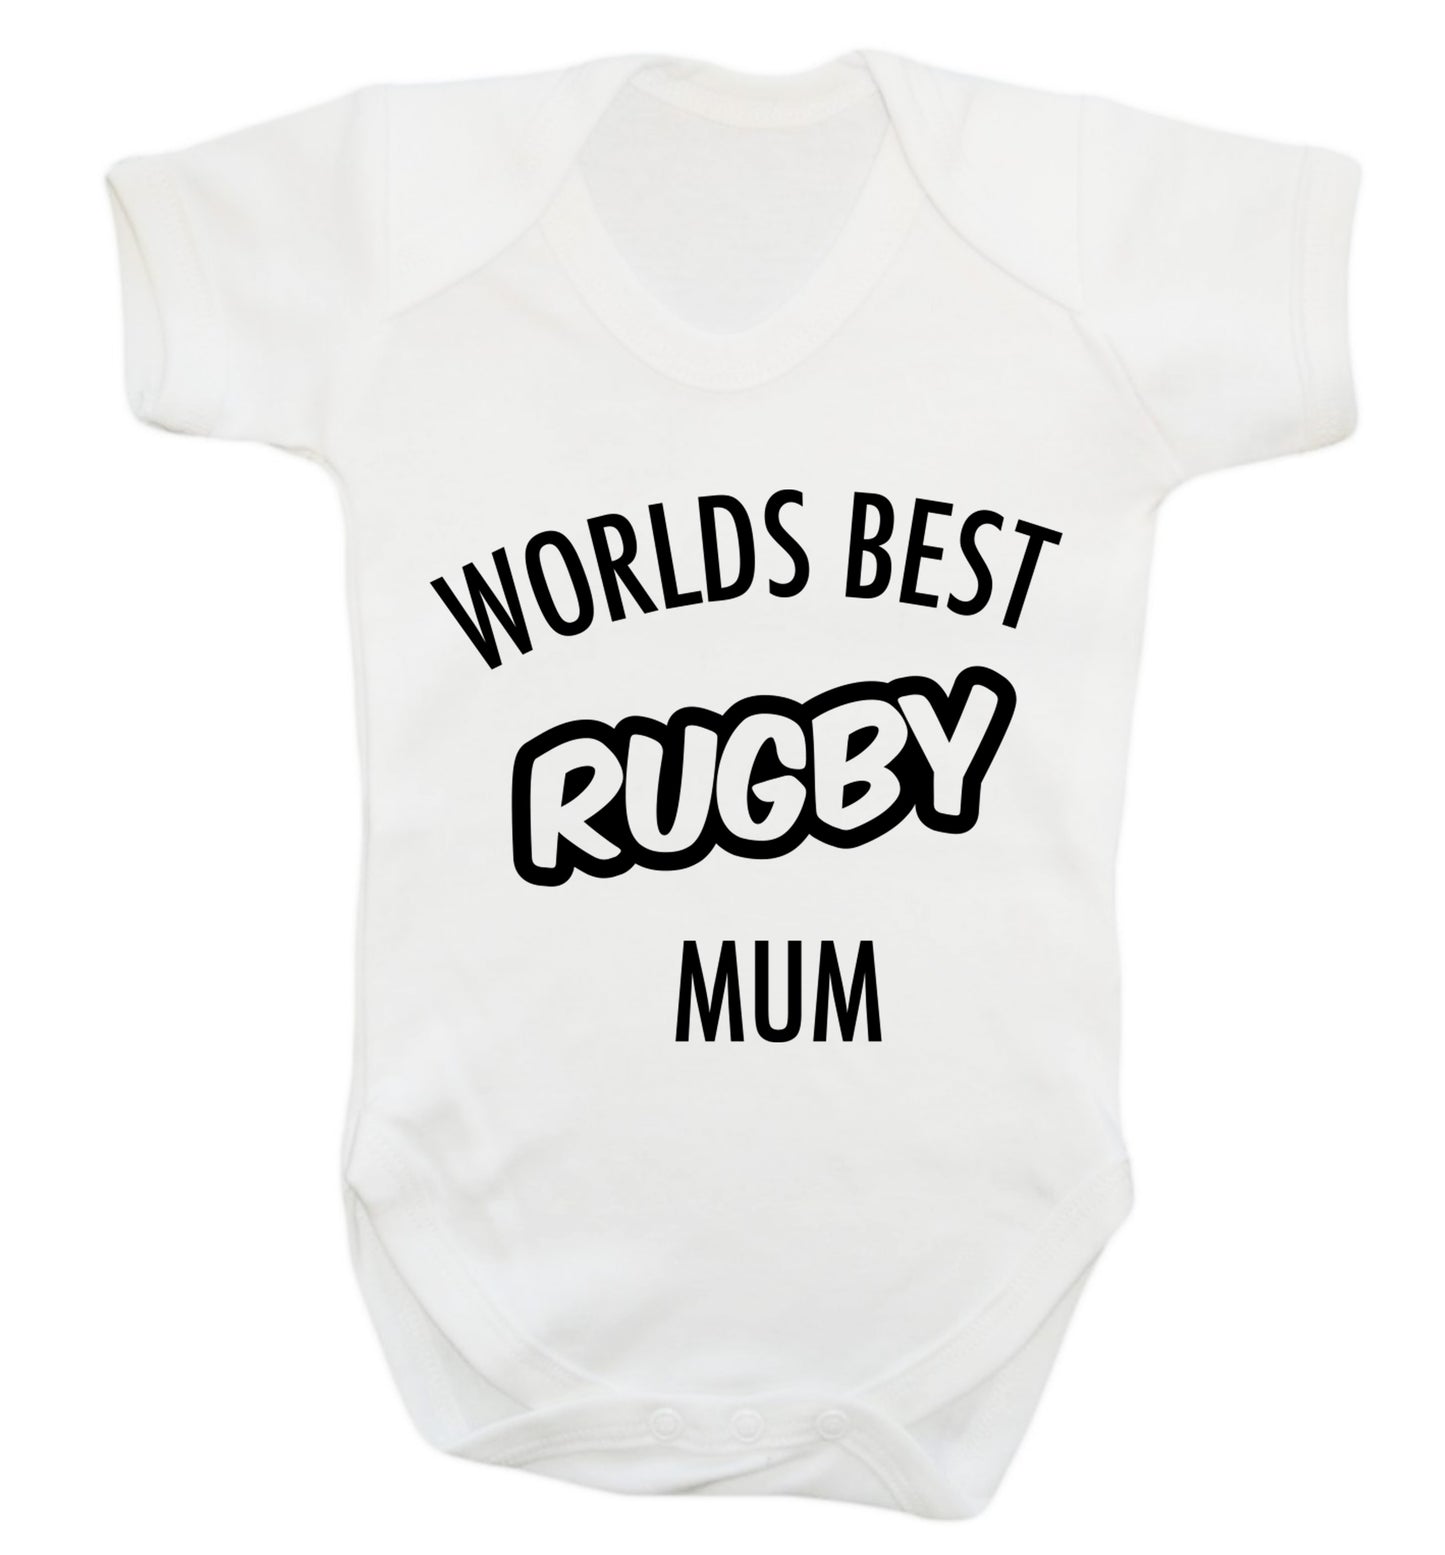 Worlds best rugby mum Baby Vest white 18-24 months